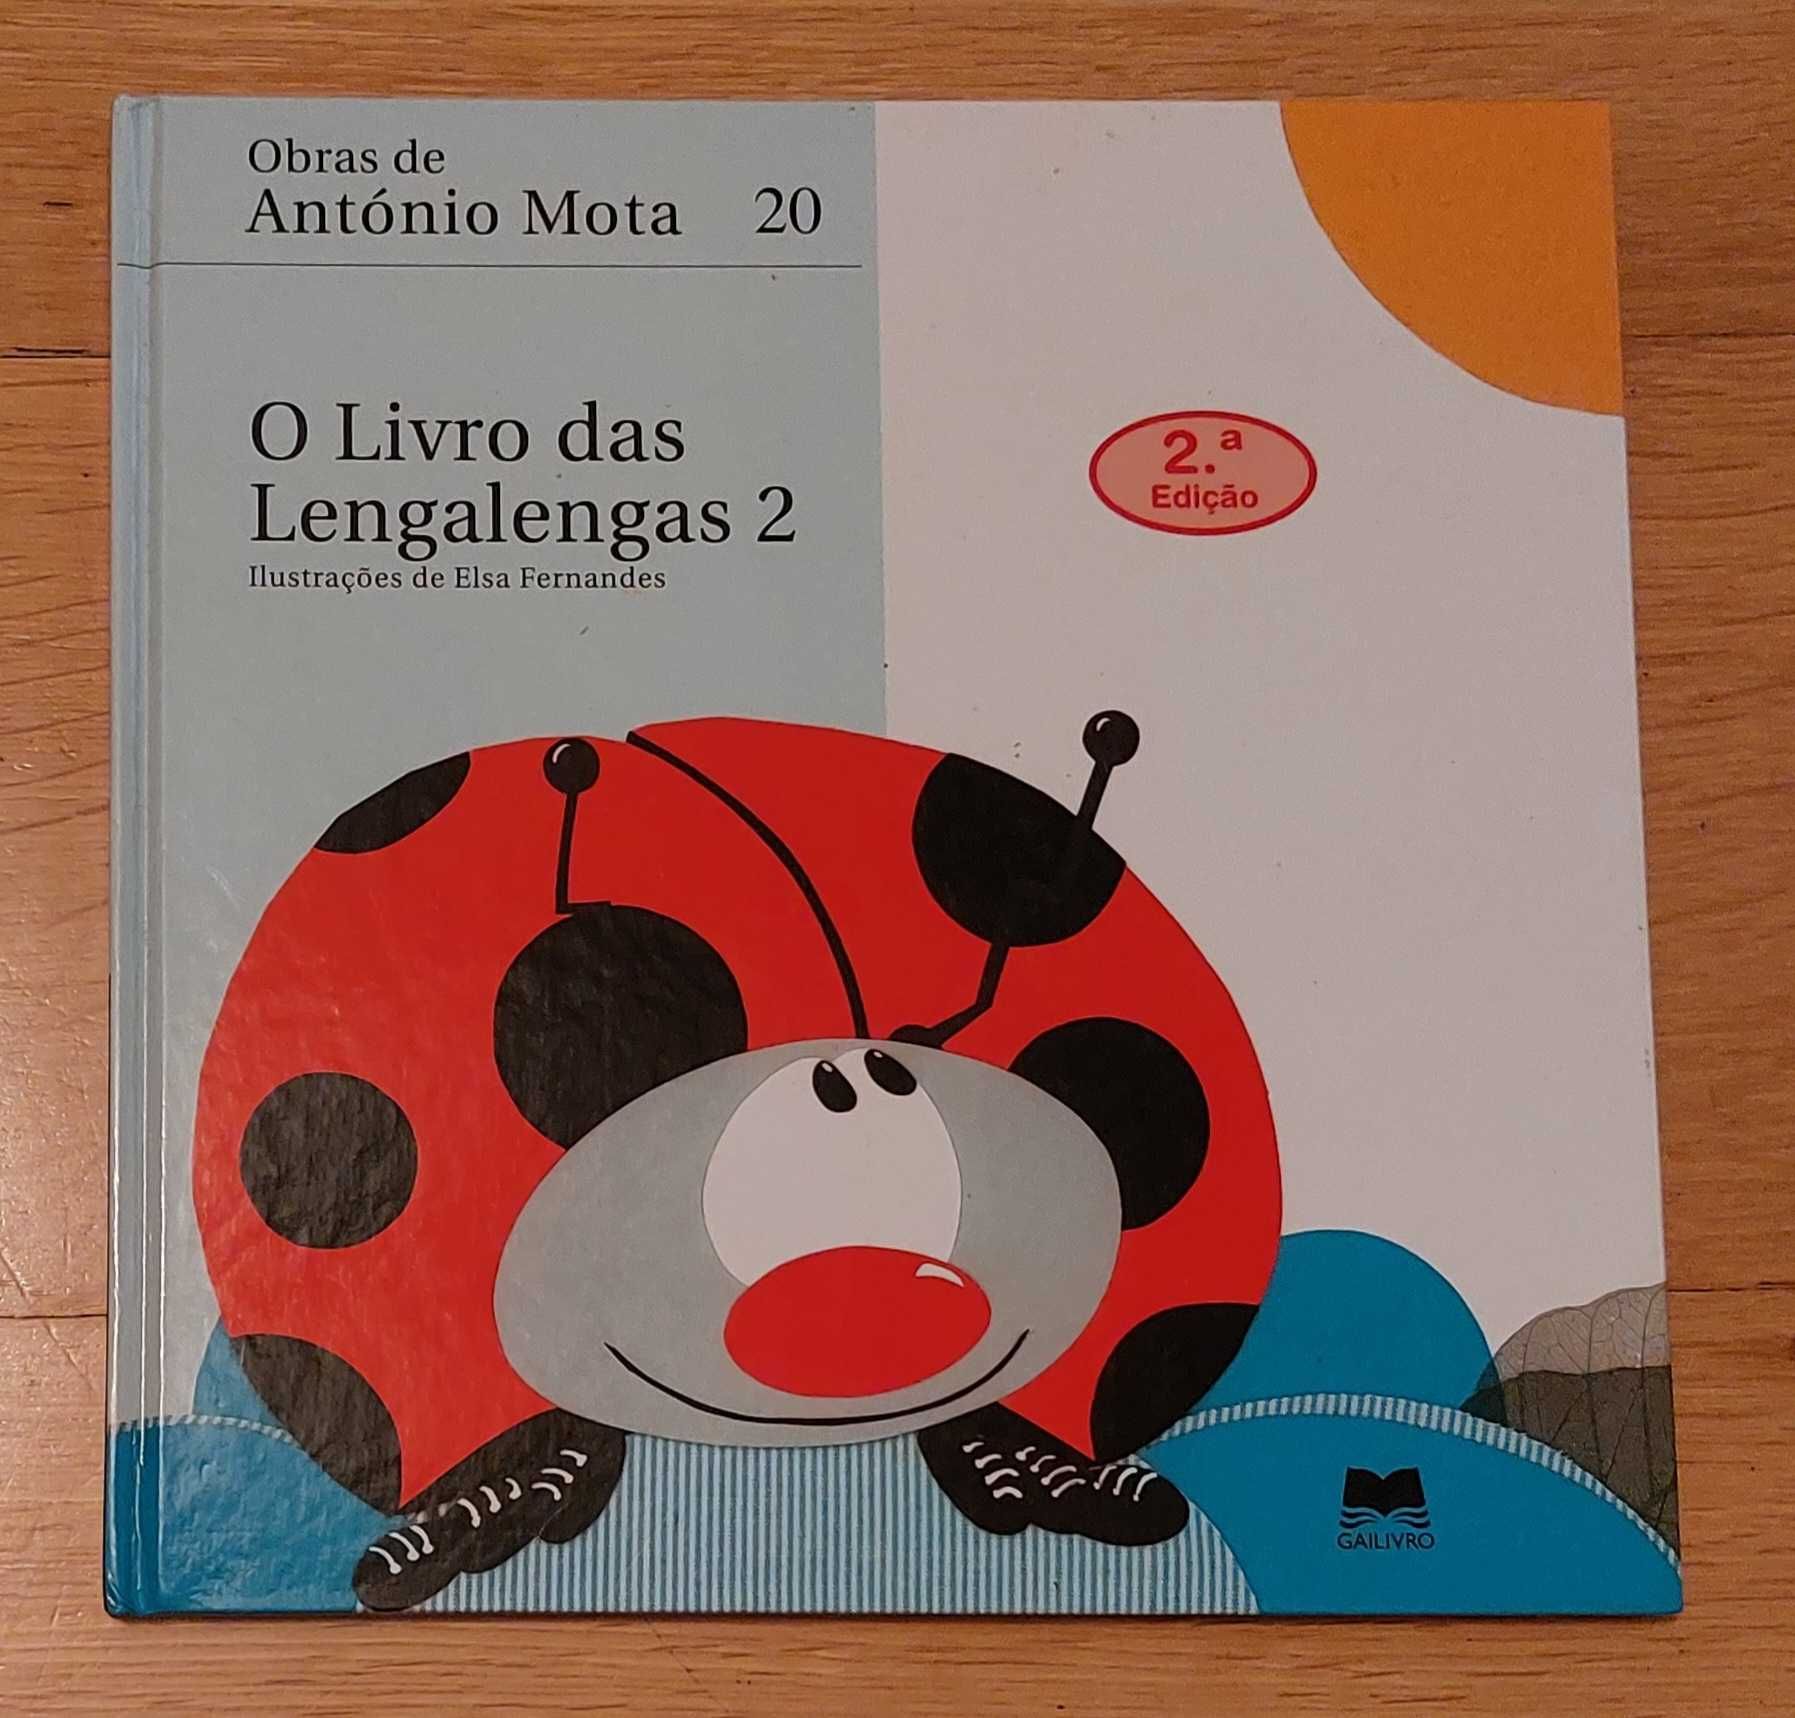 O Livro das Lengalengas 2 - António Mota